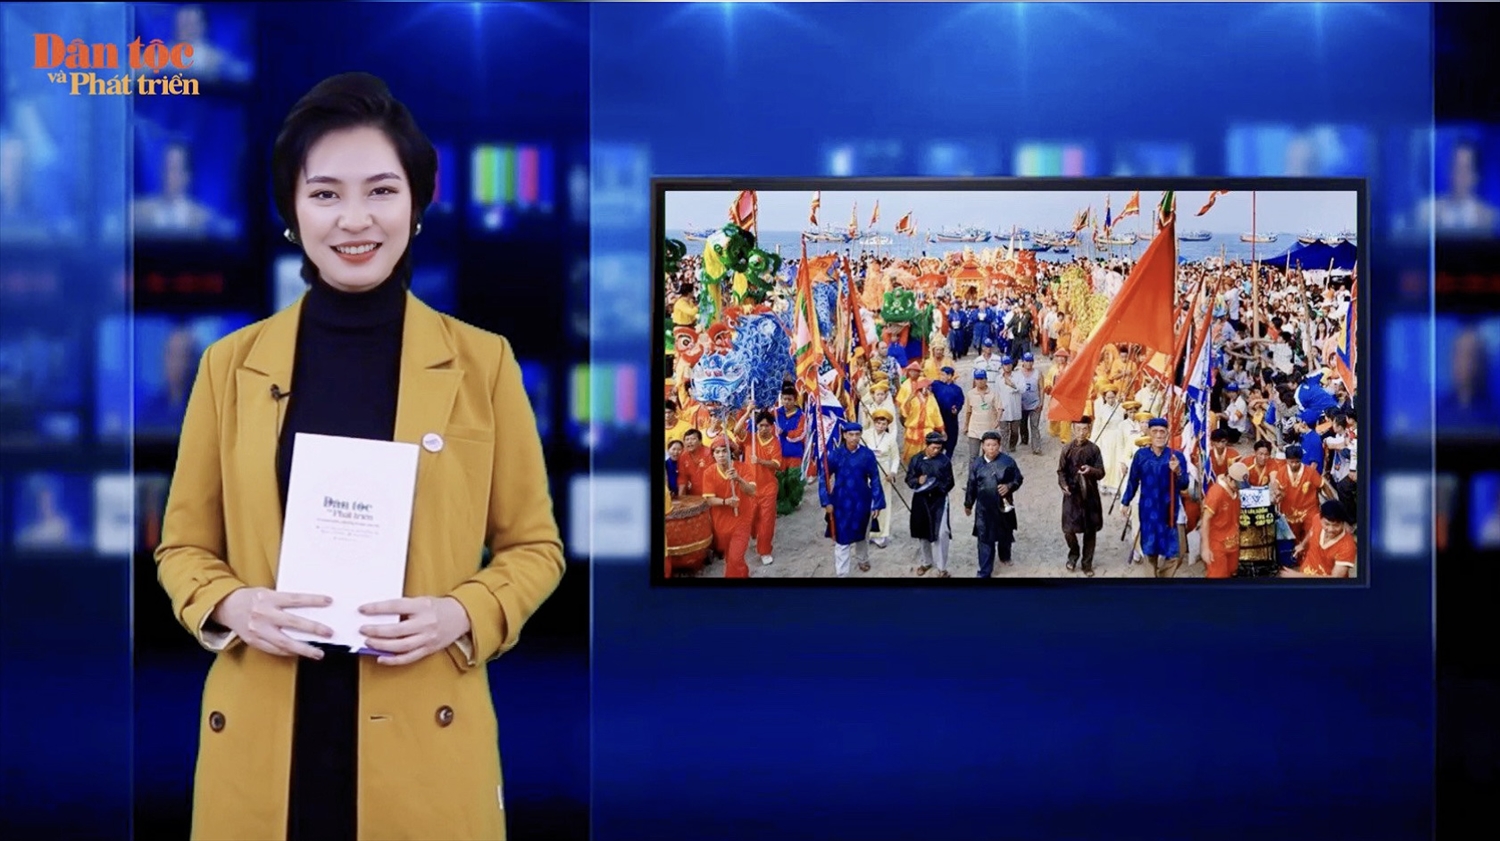 Hoa hậu các dân tộc Việt Nam năm 2022 Nông Thúy Hằng tham gia dẫn Chương trình "Tin trong ngày" của Báo Dân tộc và Phát triển 